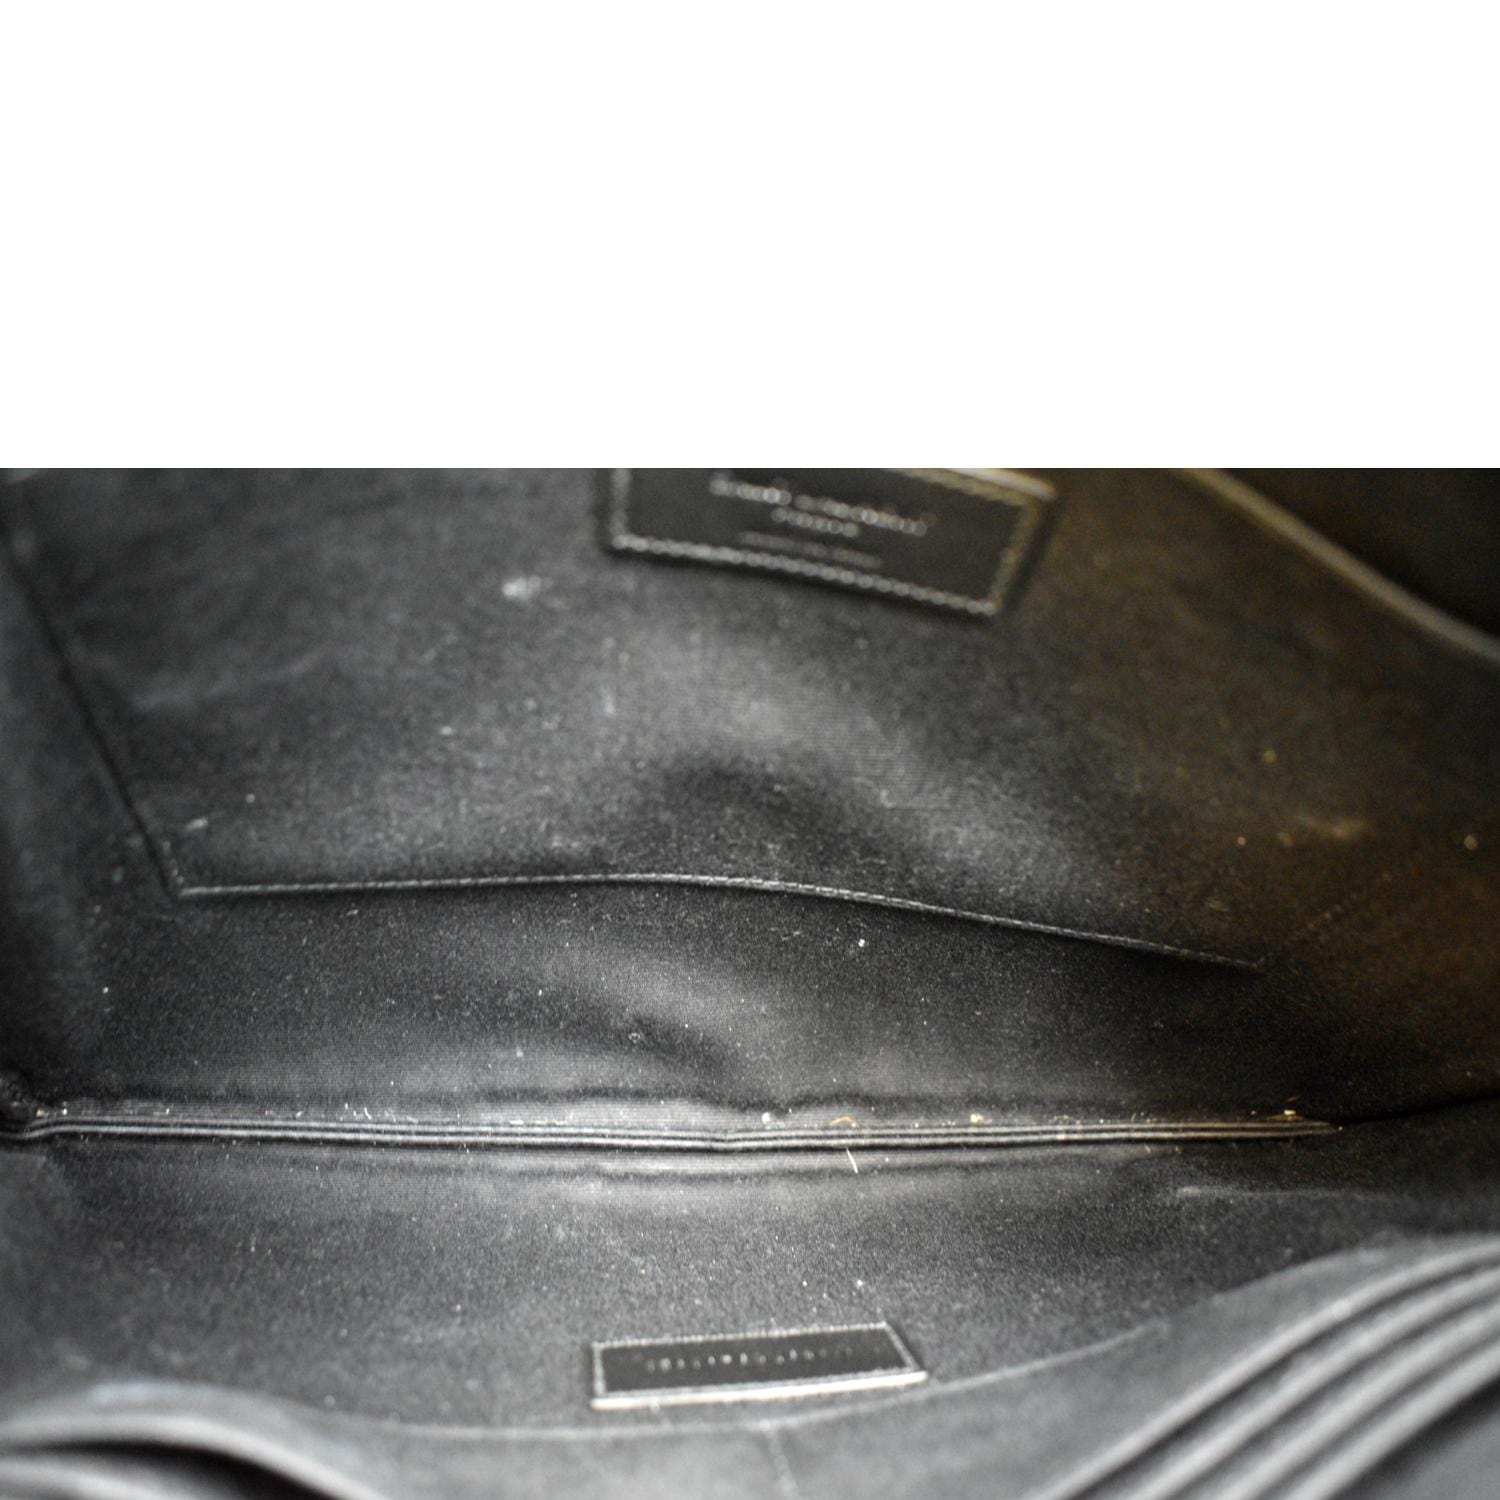 Yves Saint Laurent Grain Leather Pouch Black